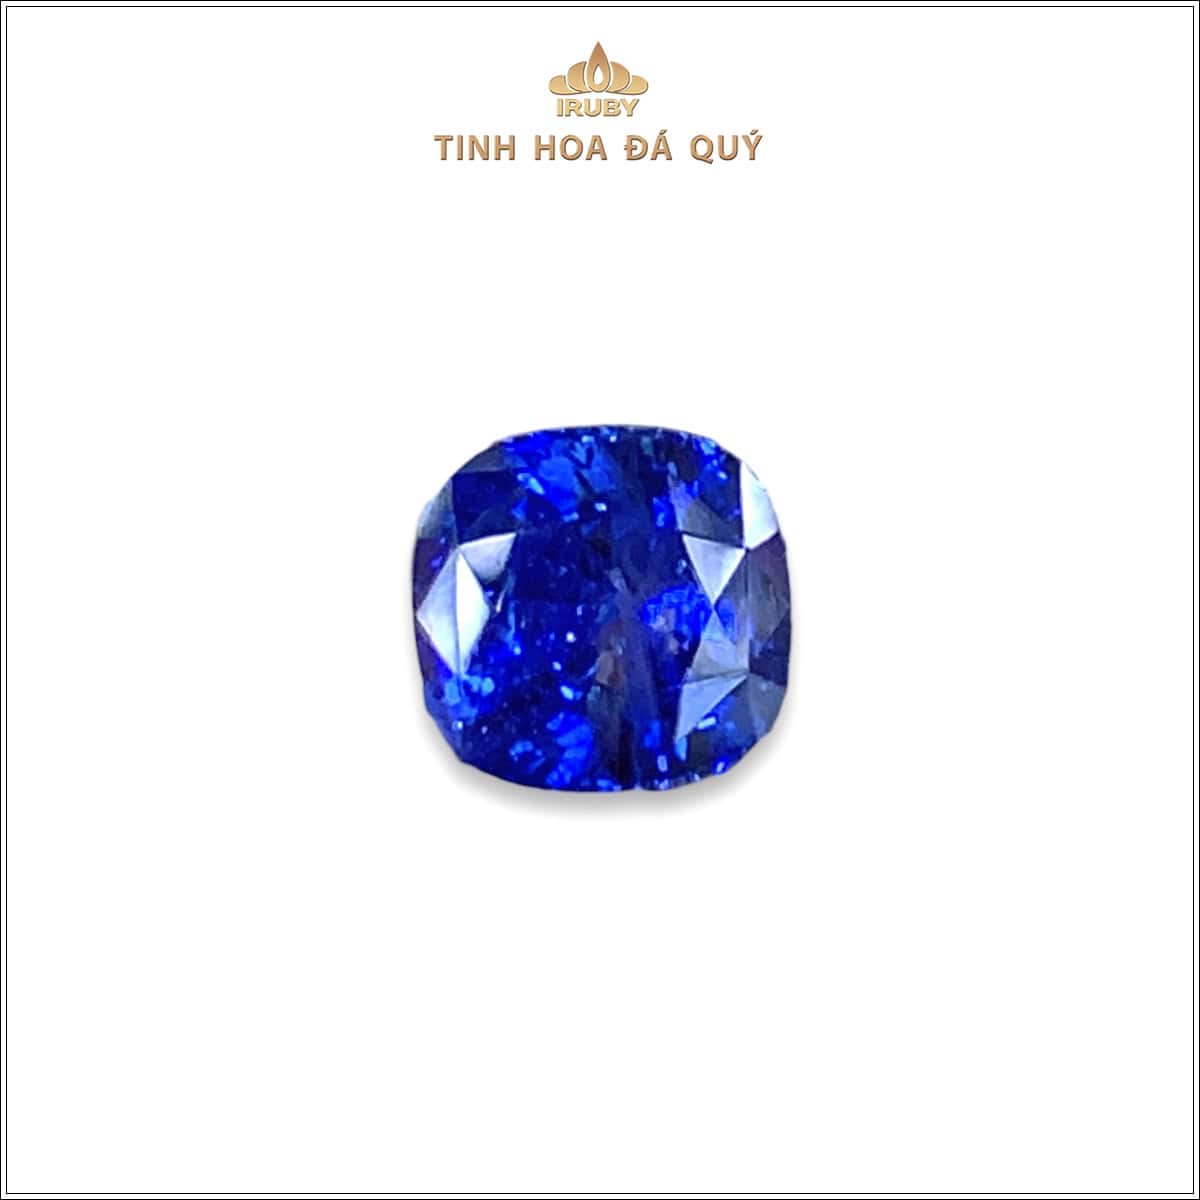 Viên Sapphire màu xanh lam hoàng gia 3,25ct - IRSP 235325